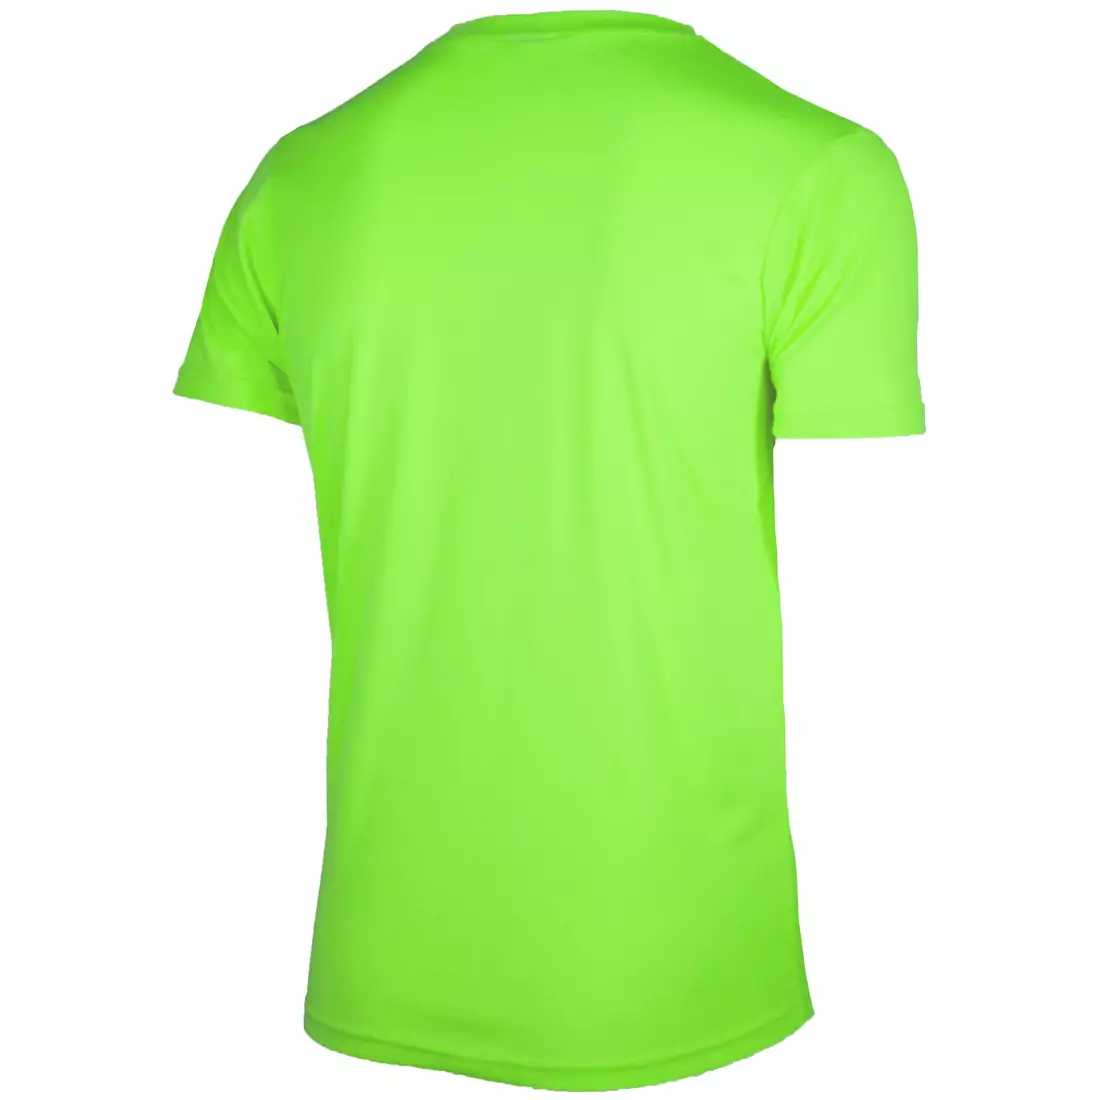 ROGELLI RUN PROMOTION męska koszulka sportowa z krótkim rękawem, fluor-zielona